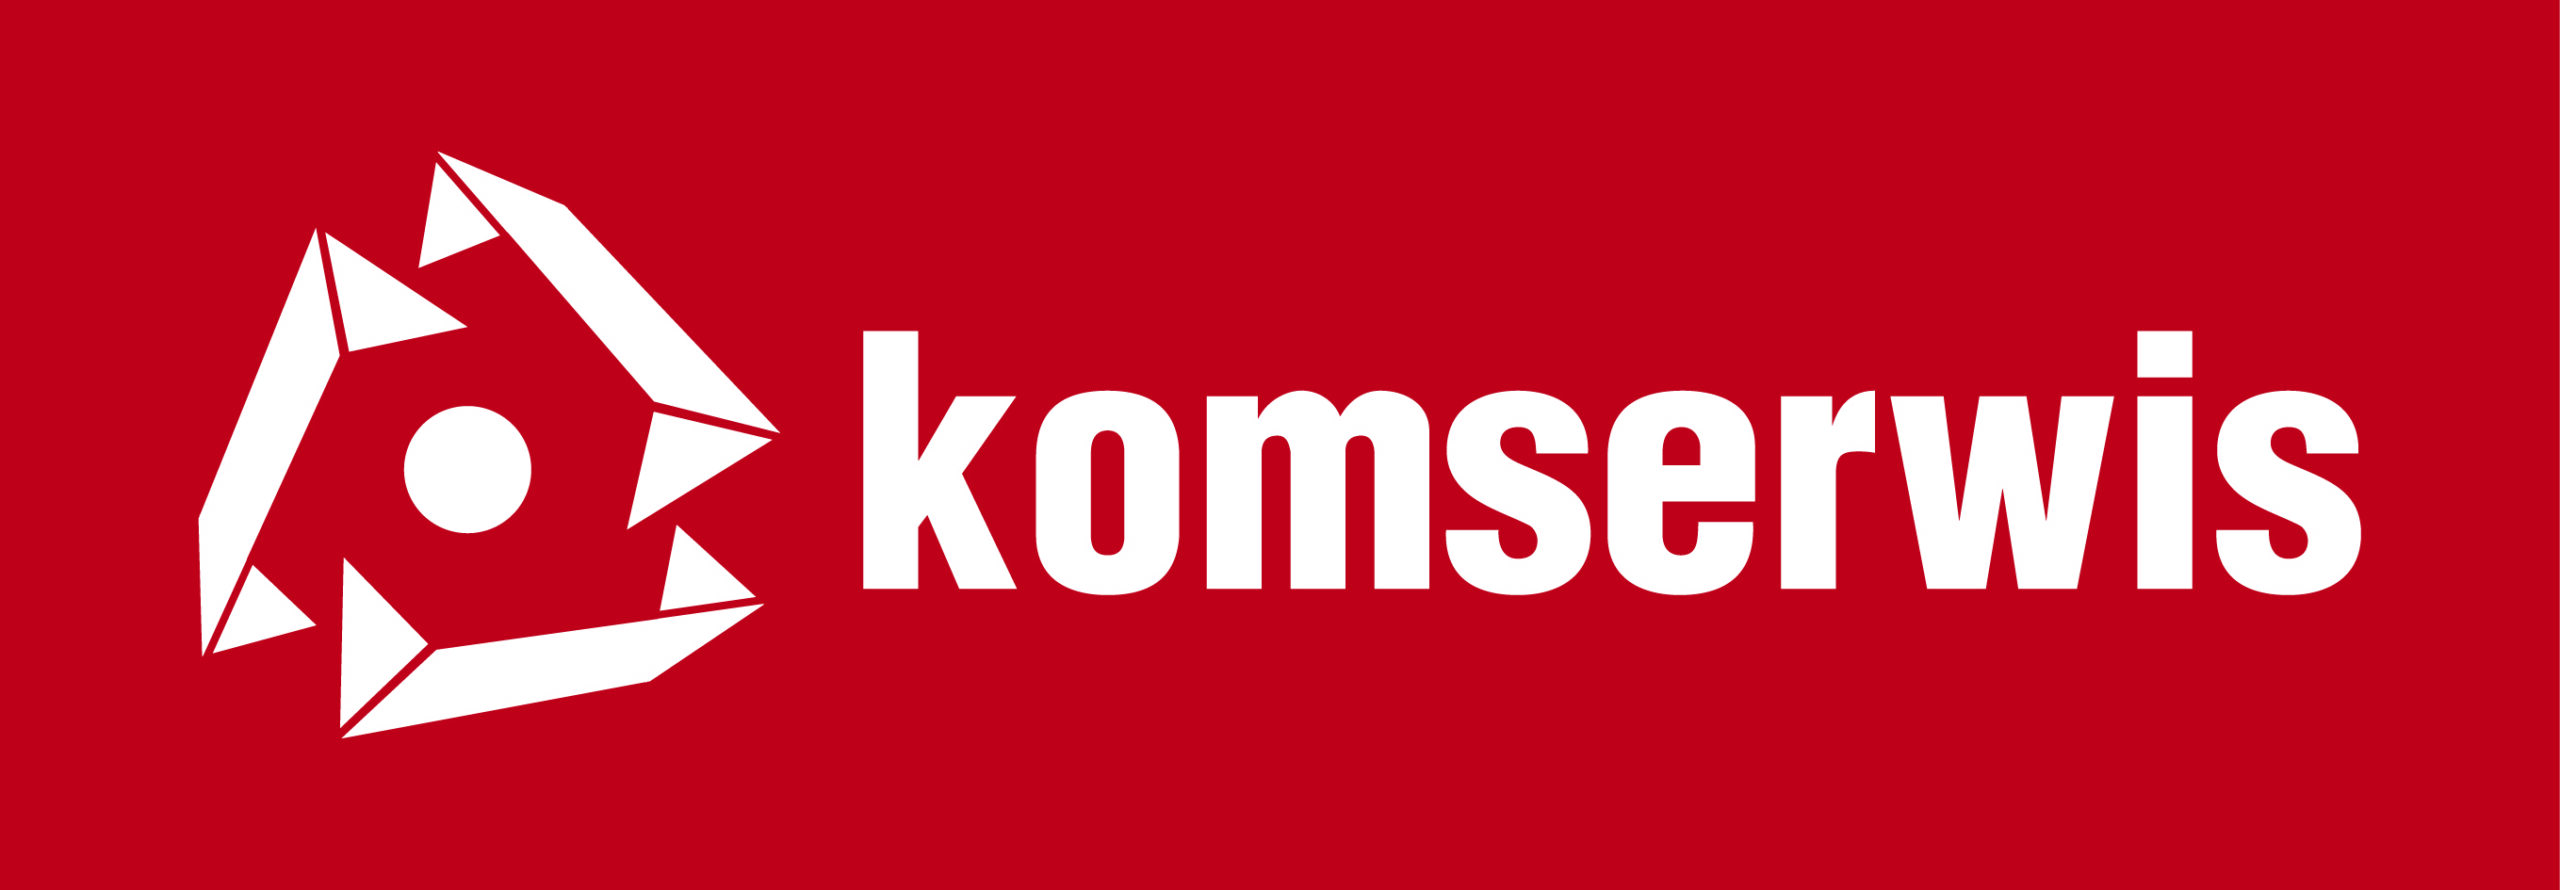 komserwis logo